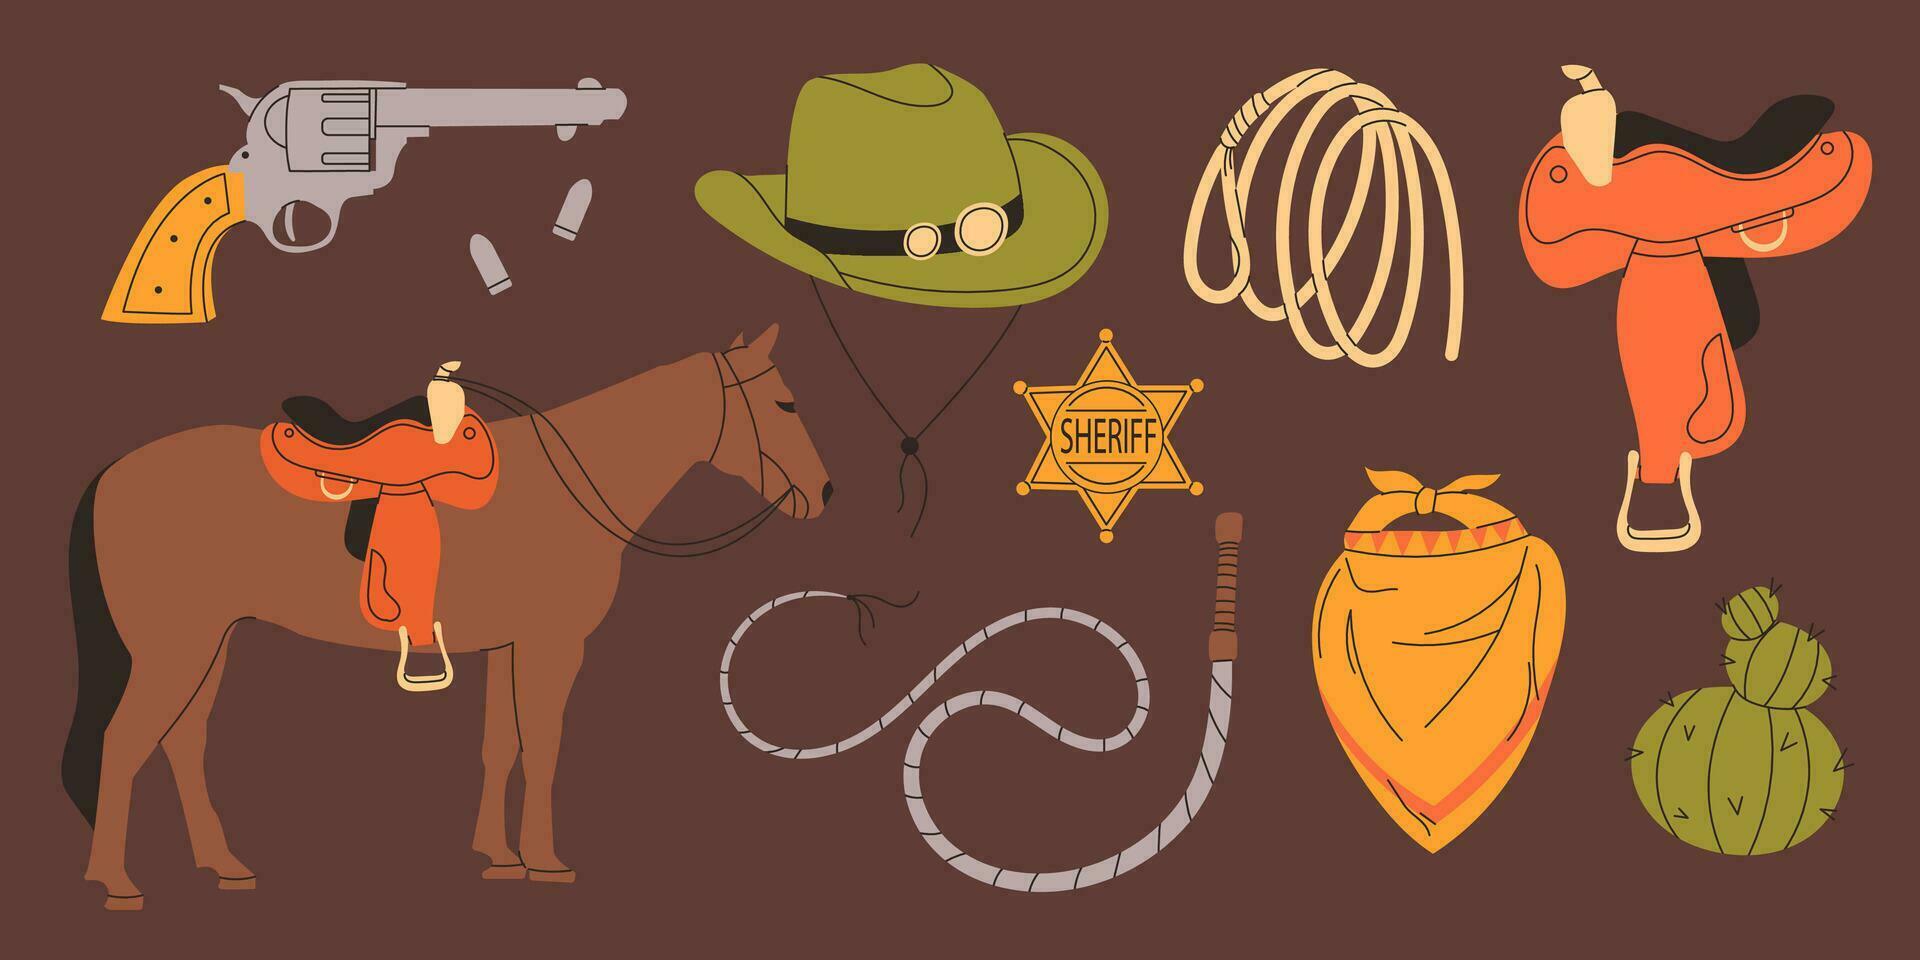 salvaje Oeste colocar. vaquero tema. linda vector conjunto de mano dibujado vaquero elementos. colección de diferente pegatinas con cactus, sombrero, caballo, lazo, látigo, herradura sillín, revólver. valores ilustración.